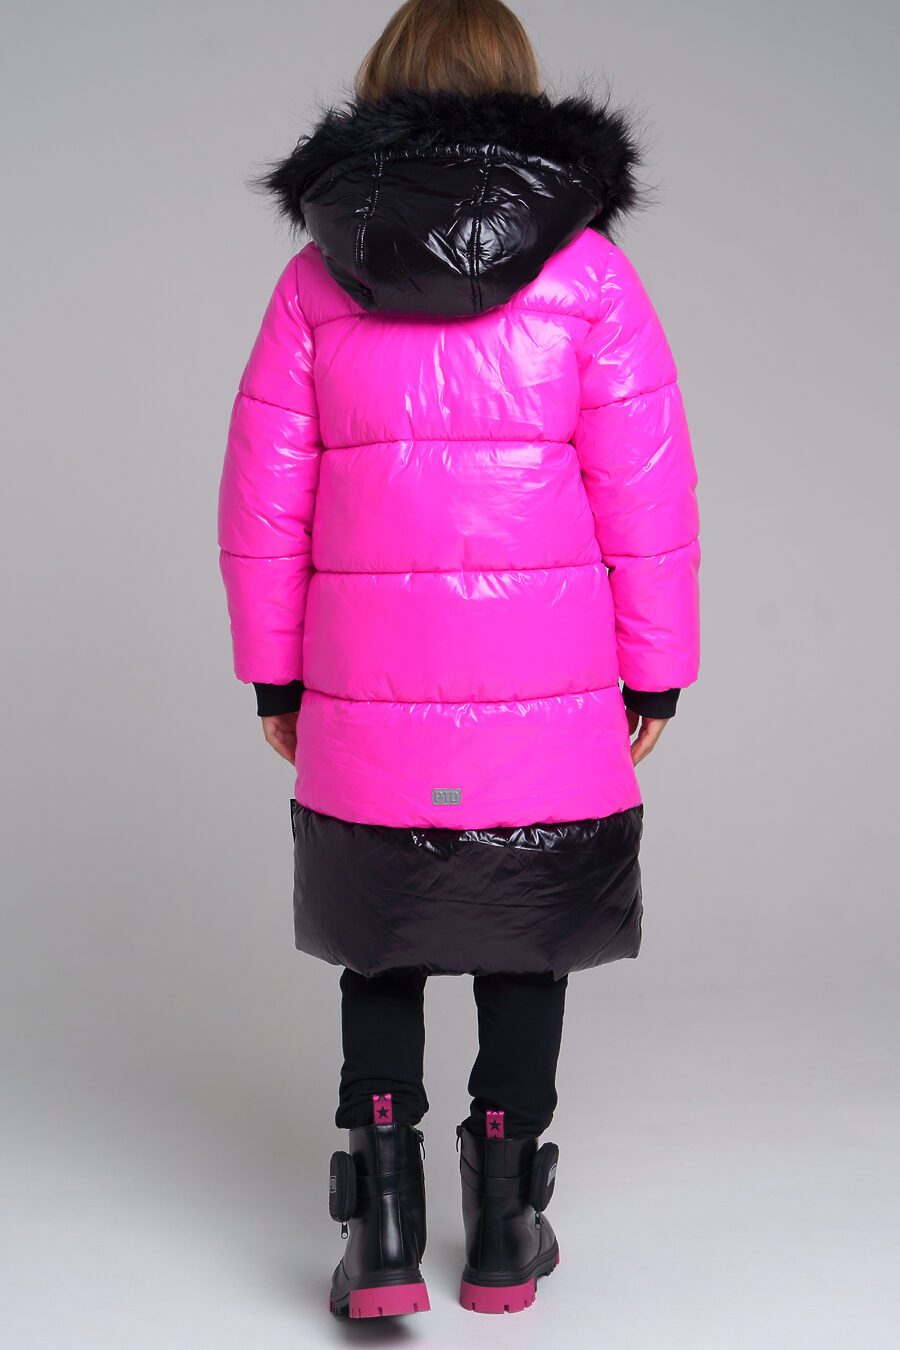 Пальто для девочек PLAYTODAY 796264 купить оптом от производителя. Совместная покупка детской одежды в OptMoyo